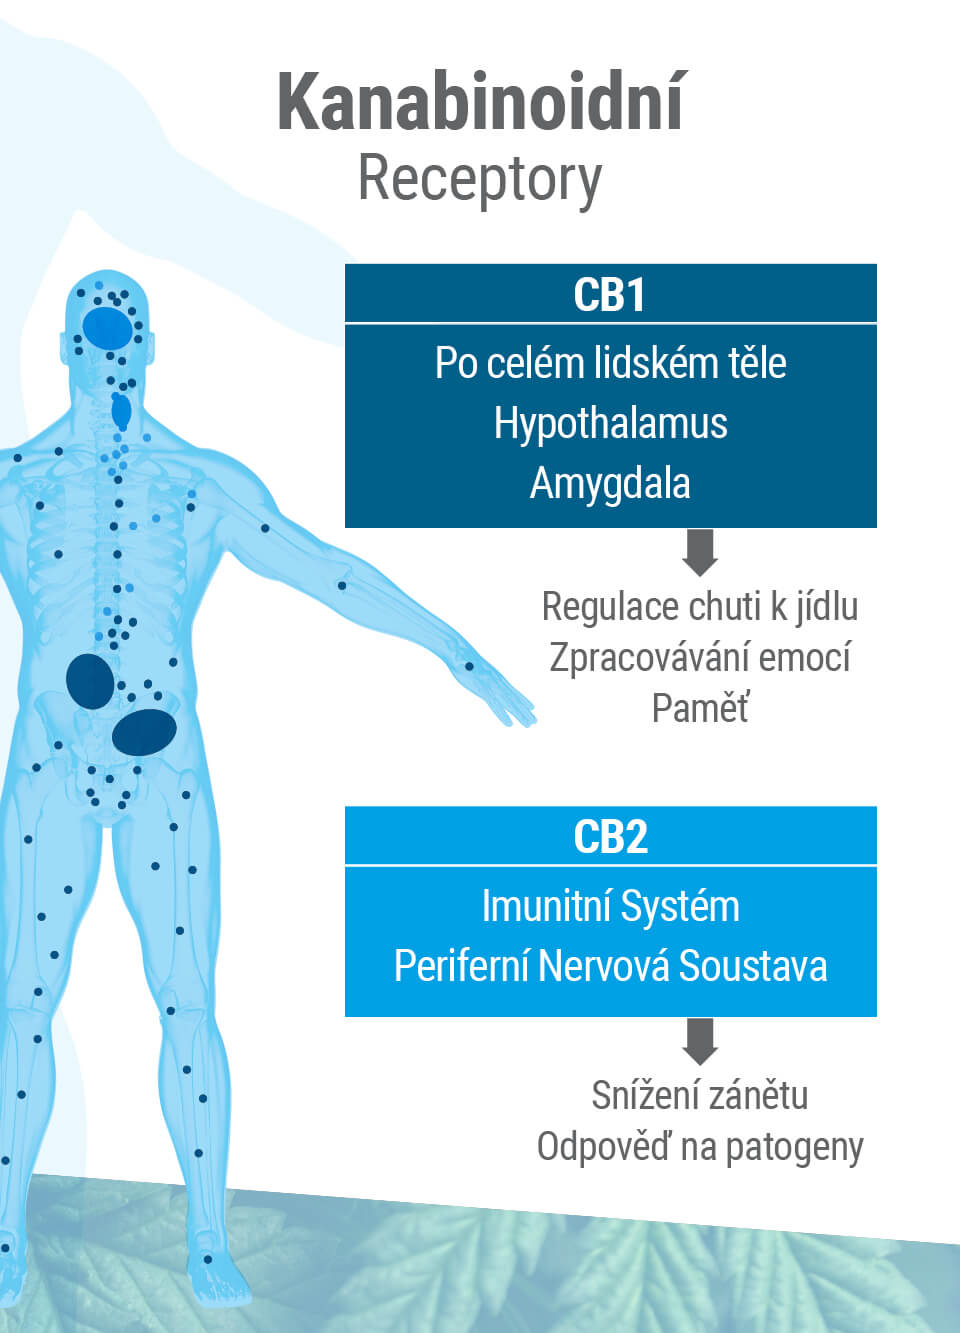 Endokanabinoidní systém se skládá ze dvou hlavních receptorů: CB1 a CB2